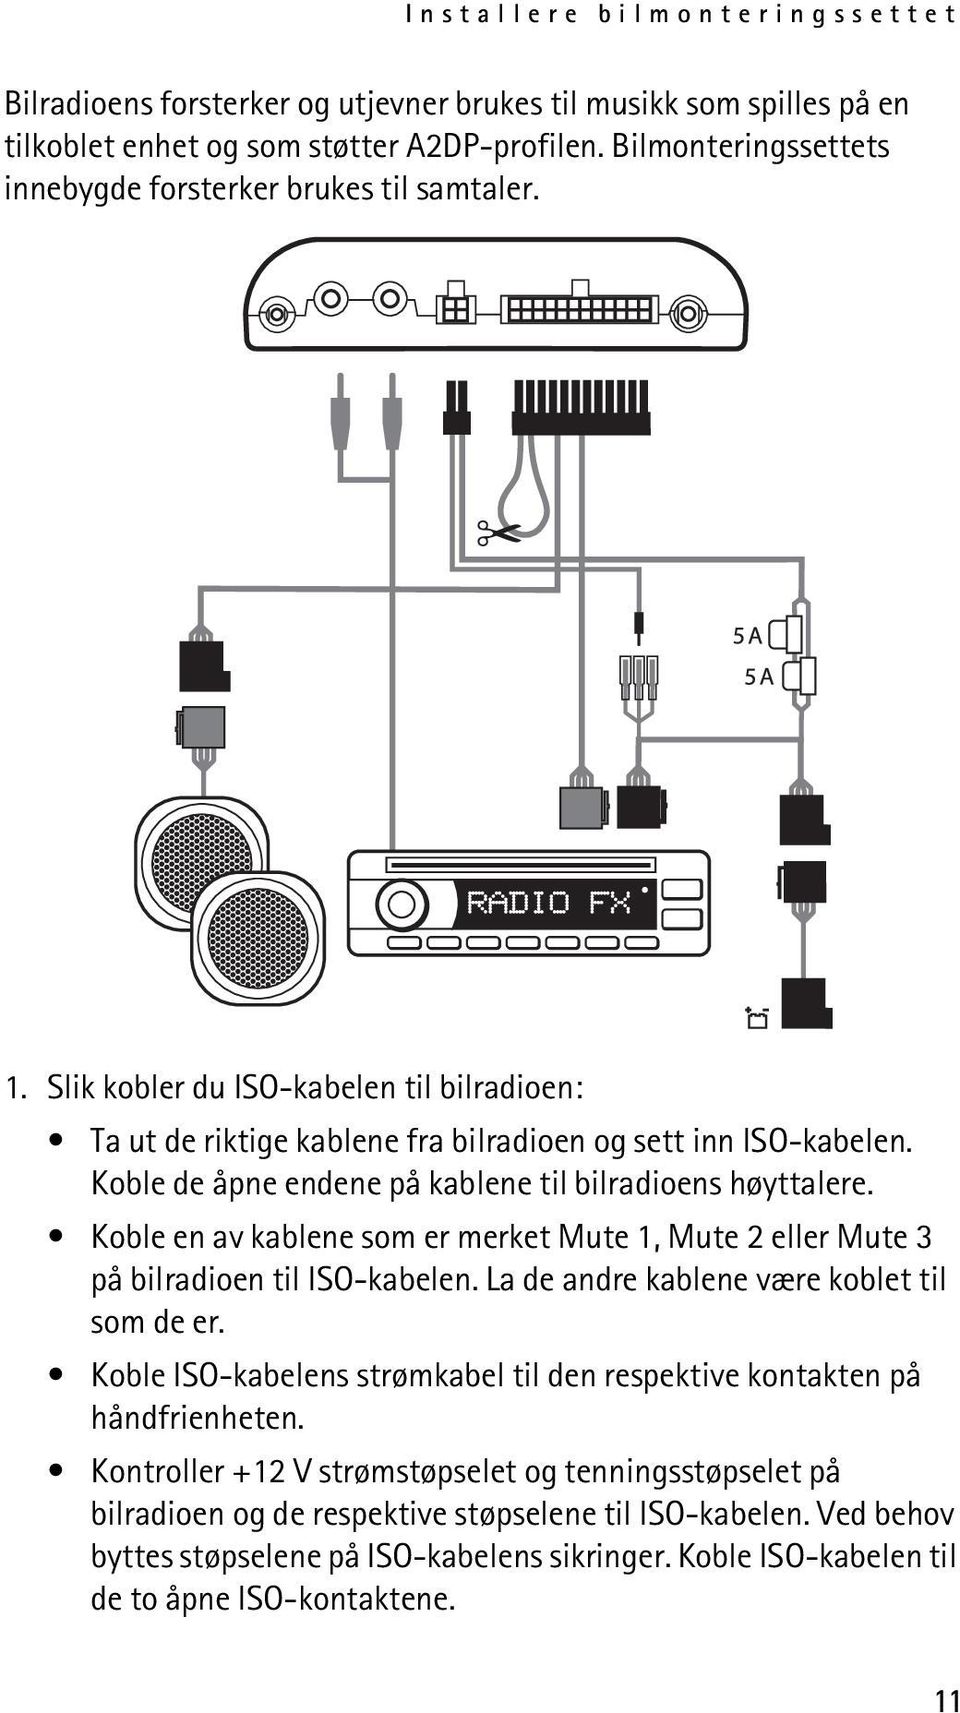 Koble de åpne endene på kablene til bilradioens høyttalere. Koble en av kablene som er merket Mute 1, Mute 2 eller Mute 3 på bilradioen til ISO-kabelen. La de andre kablene være koblet til som de er.